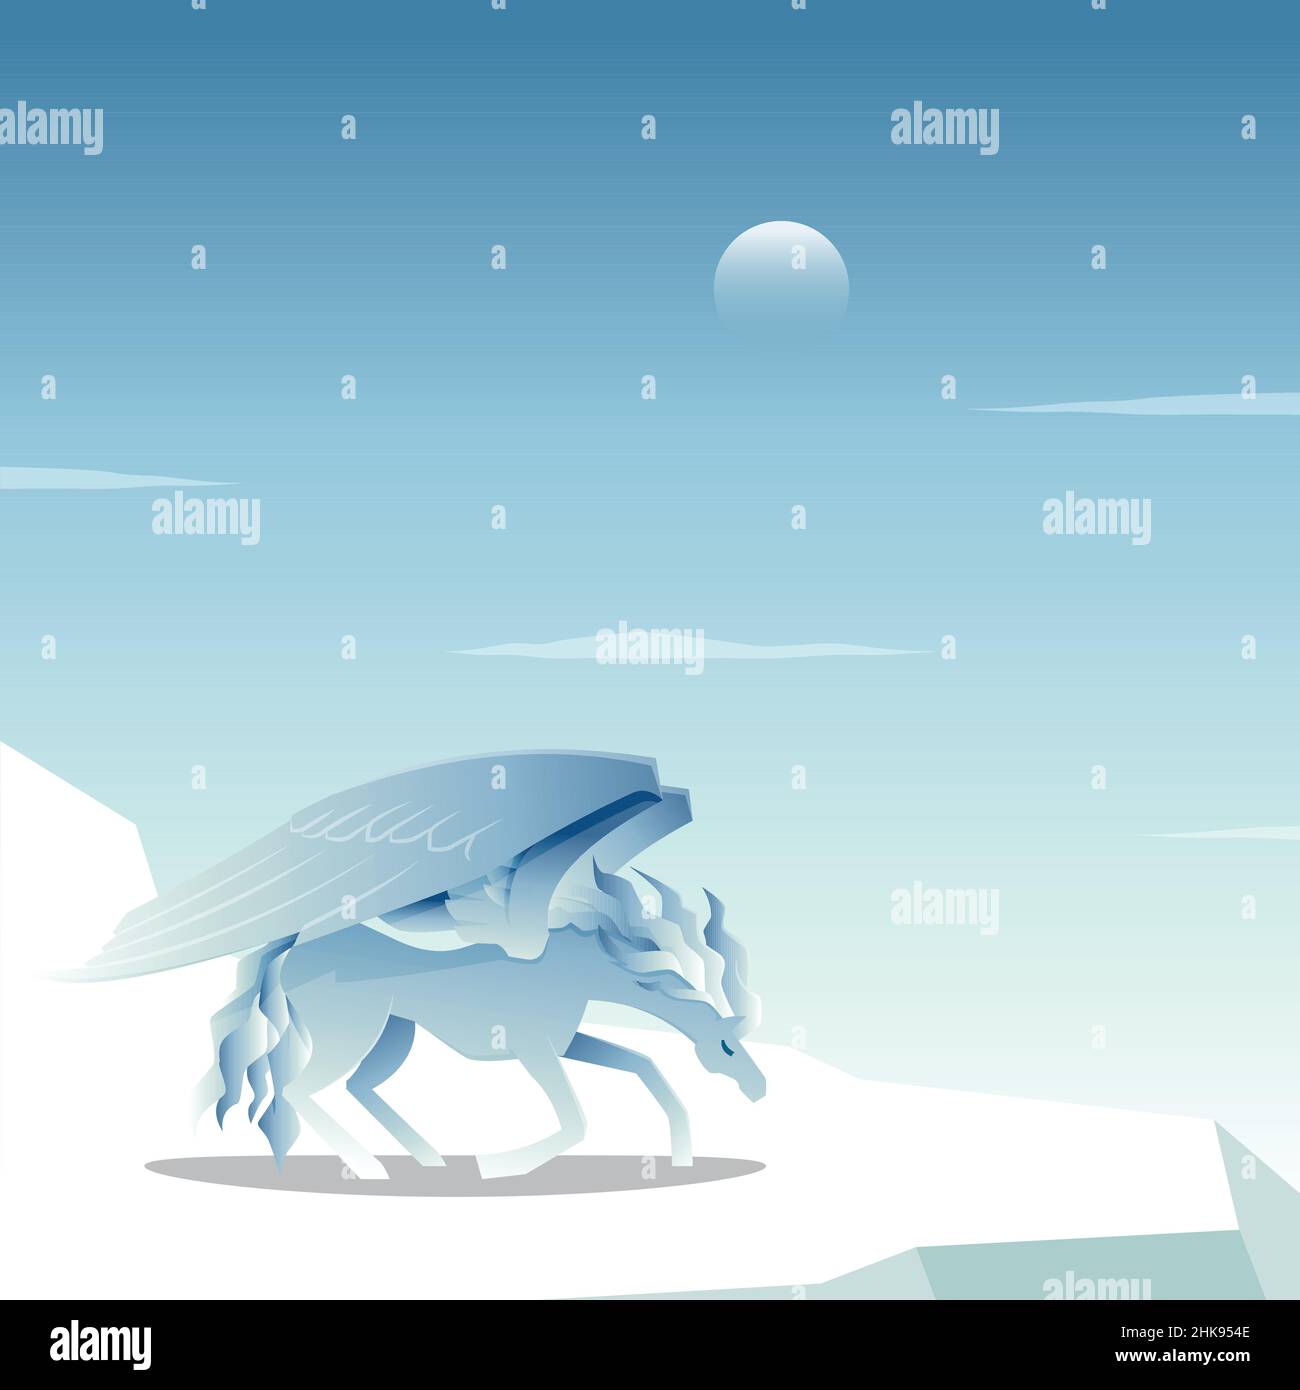 Belle Pegasus Winged Horse s'agenouille sur glace gelée neige Cool Epic Illustration Illustration de Vecteur